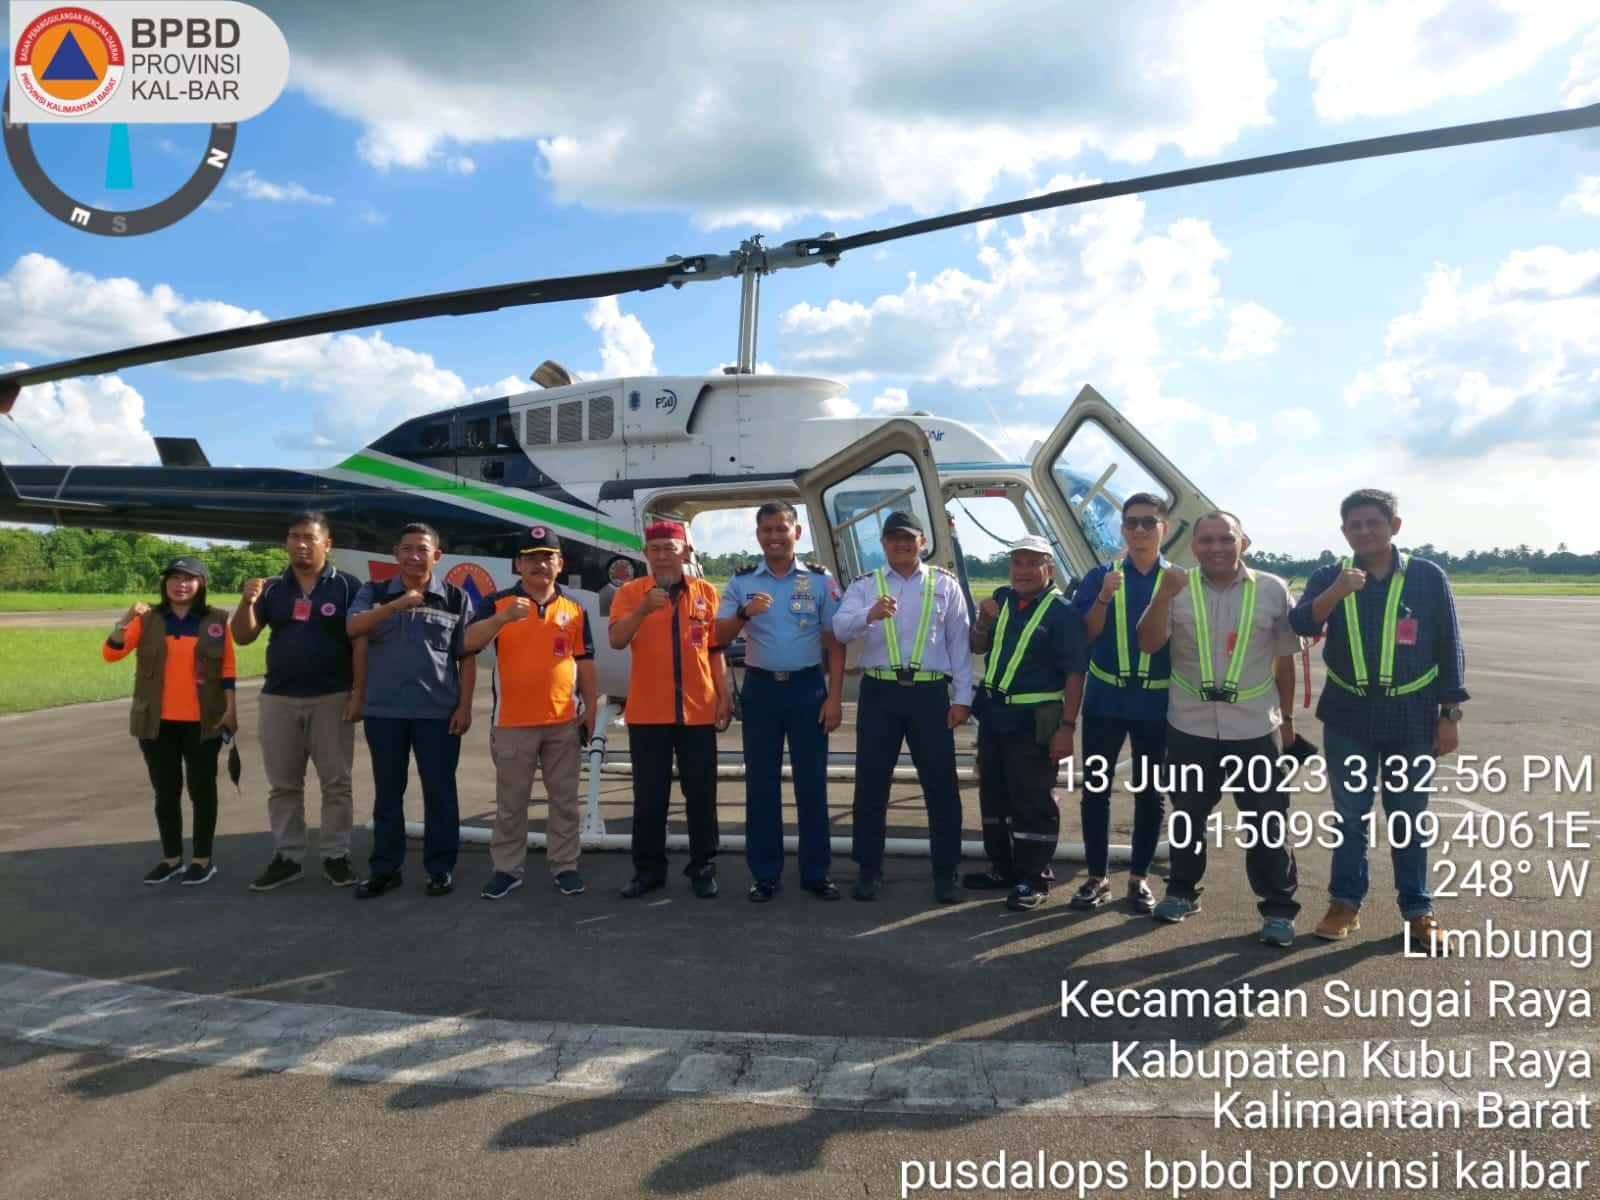 Helikopter patroli karhutla bantuan BNPB untuk wilayah Kota Pontianak dan sekitarnya. (Foto: Indri)